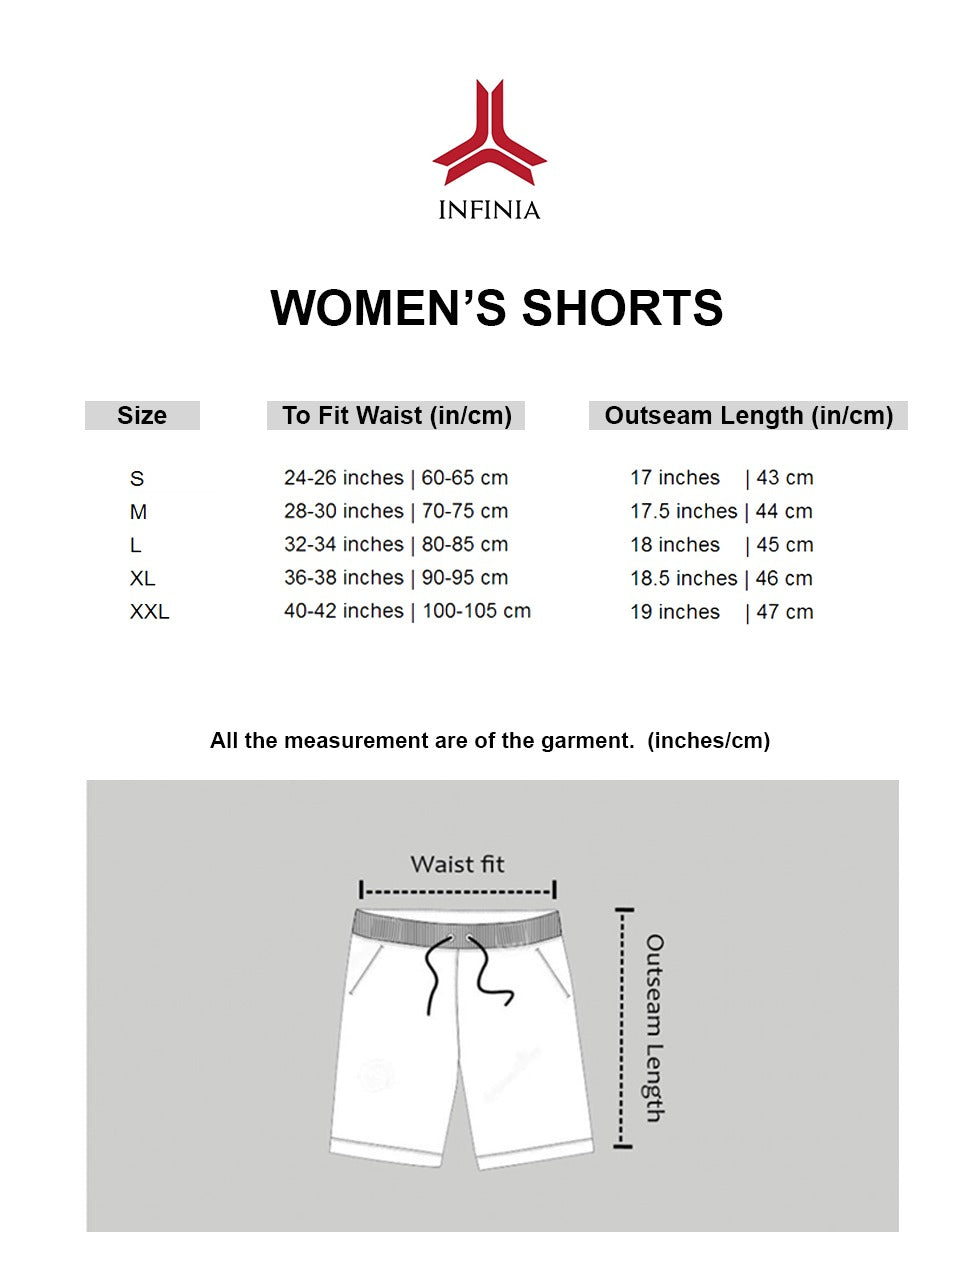 Essential Shorts - Heather Grey